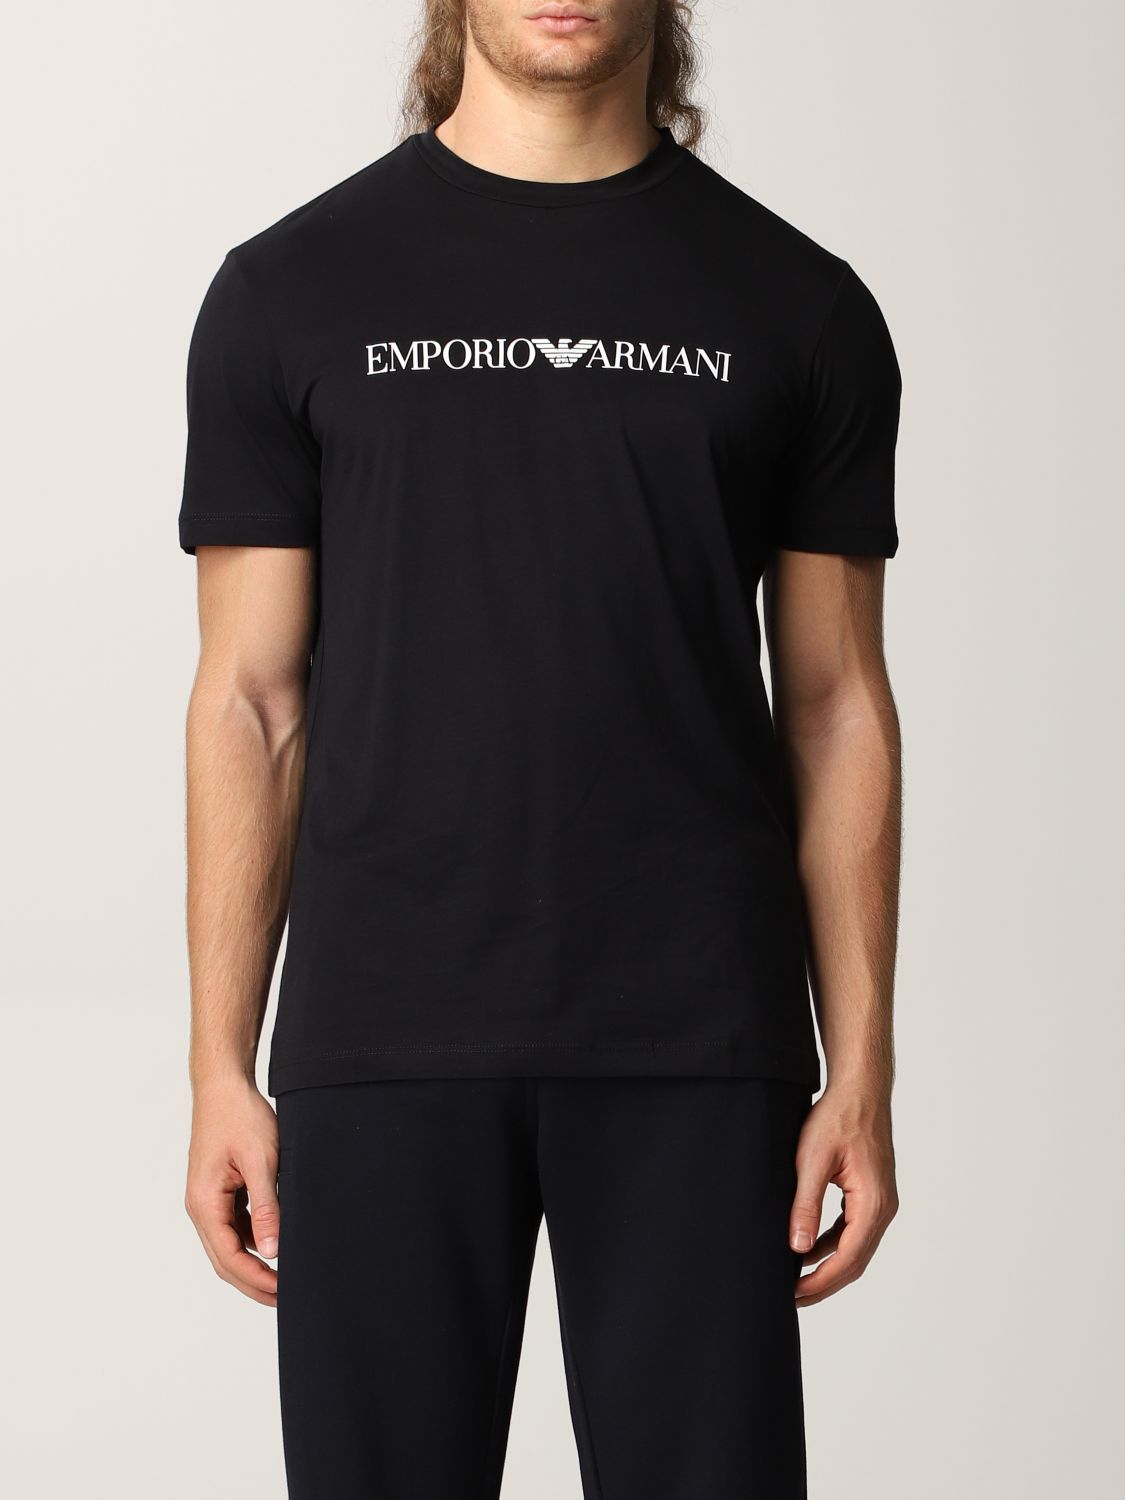 1980円 登場大人気アイテム EMPORIO ARMANI エンポリオアルマーニ Tシャツ ロゴ XL